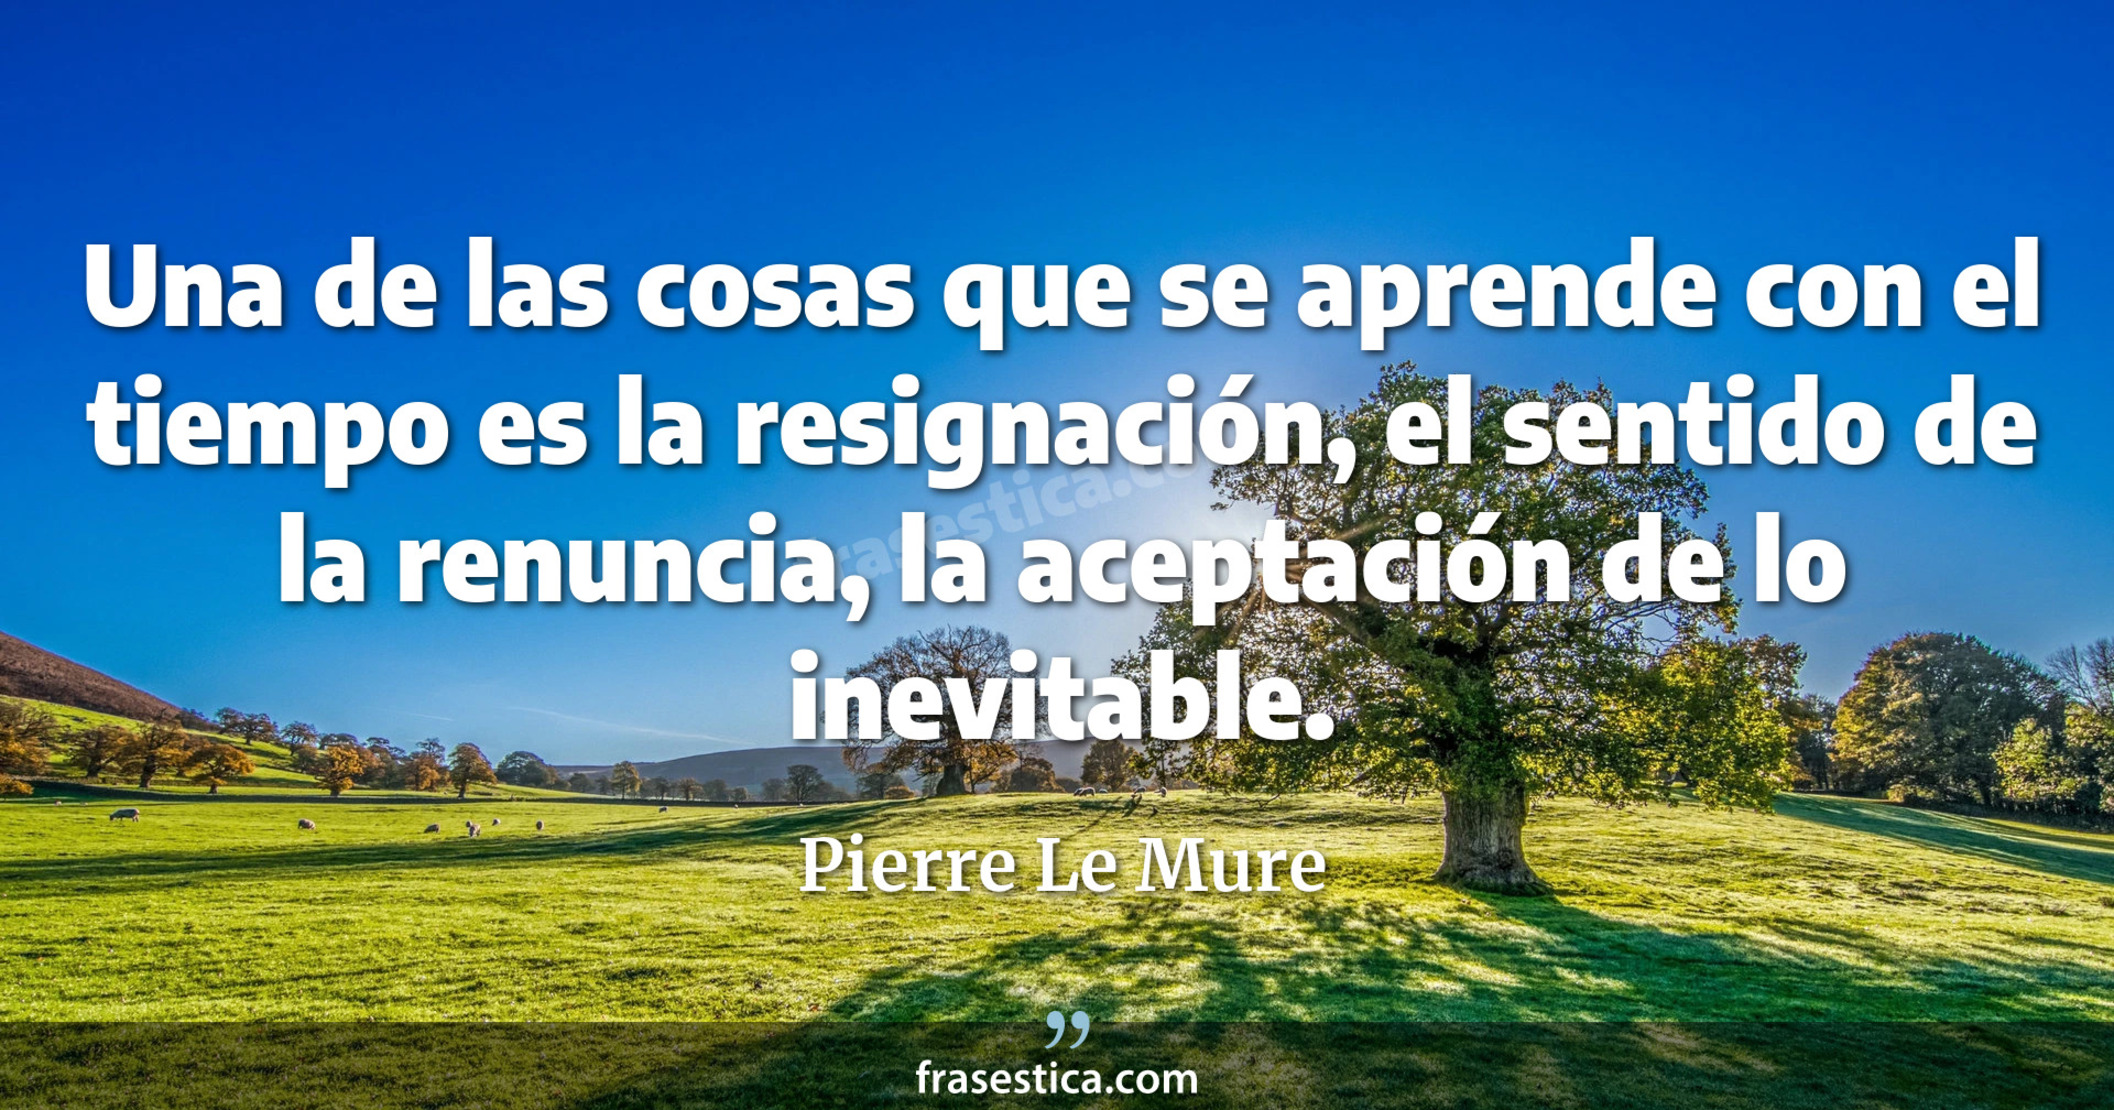 Una de las cosas que se aprende con el tiempo es la resignación, el sentido de la renuncia, la aceptación de lo inevitable. - Pierre Le Mure